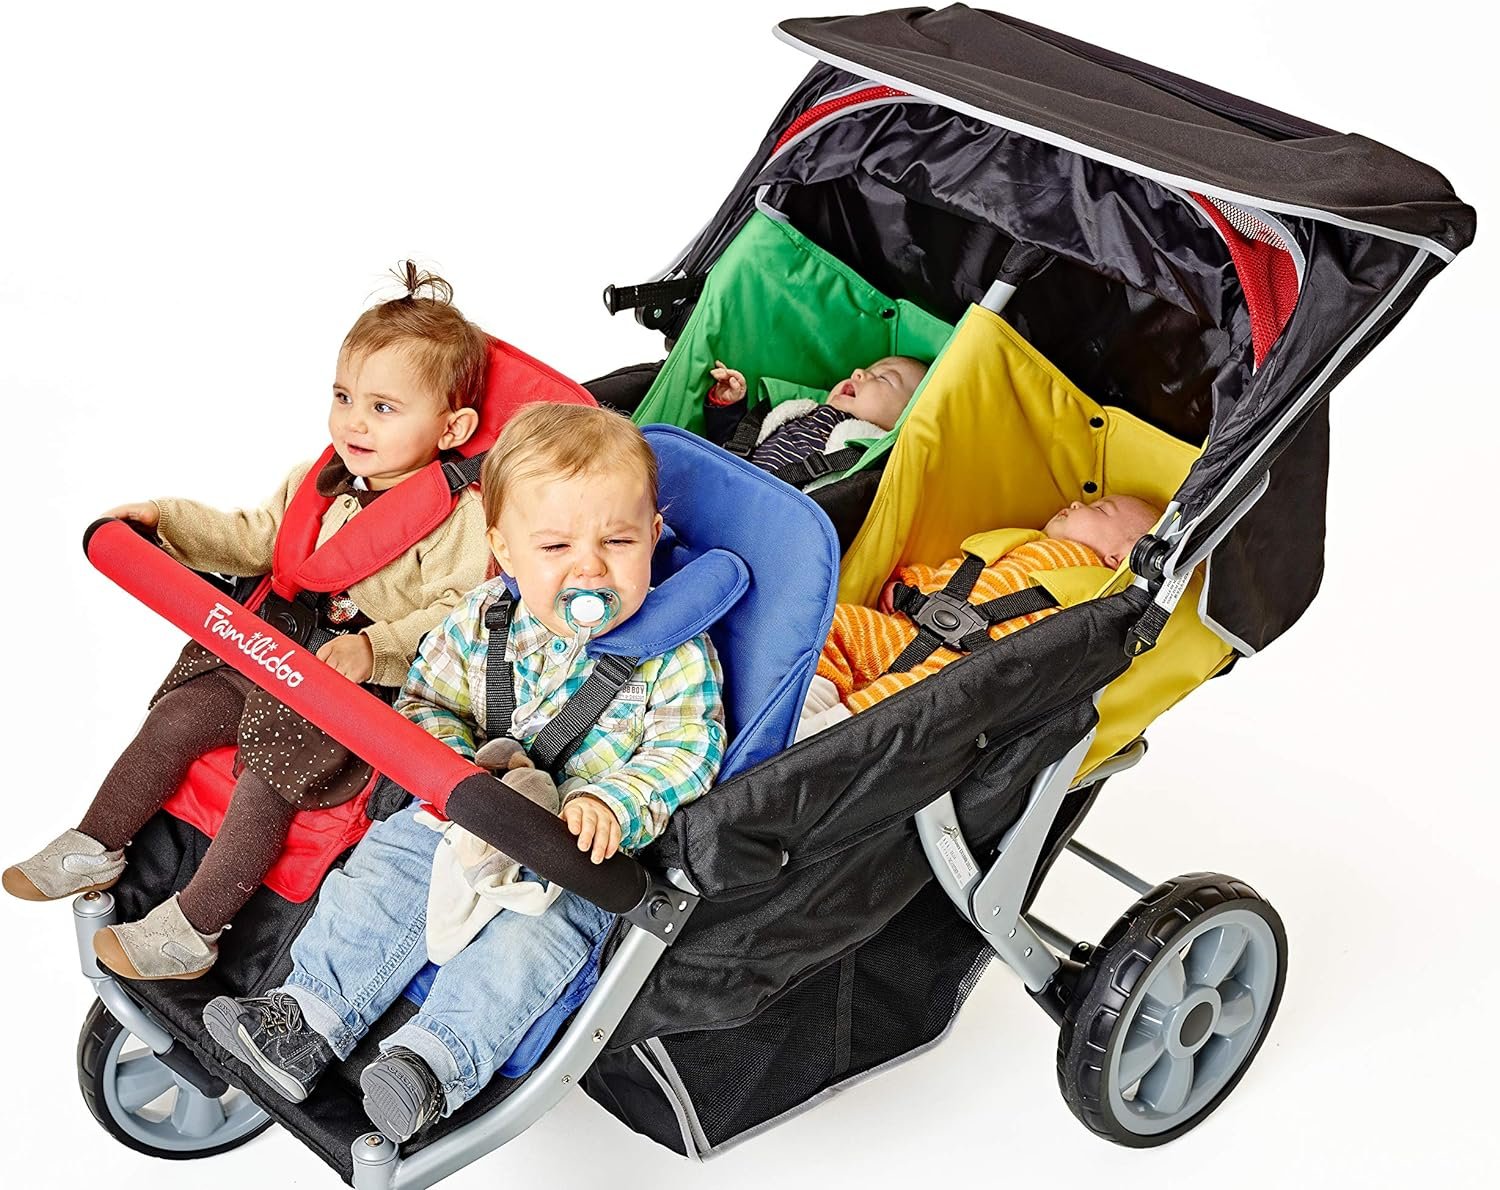 Коляску можно использовать для. Ребенок в коляске. Коляска для четверых детей. Коляска "малыш". Коляска для 4 детей.